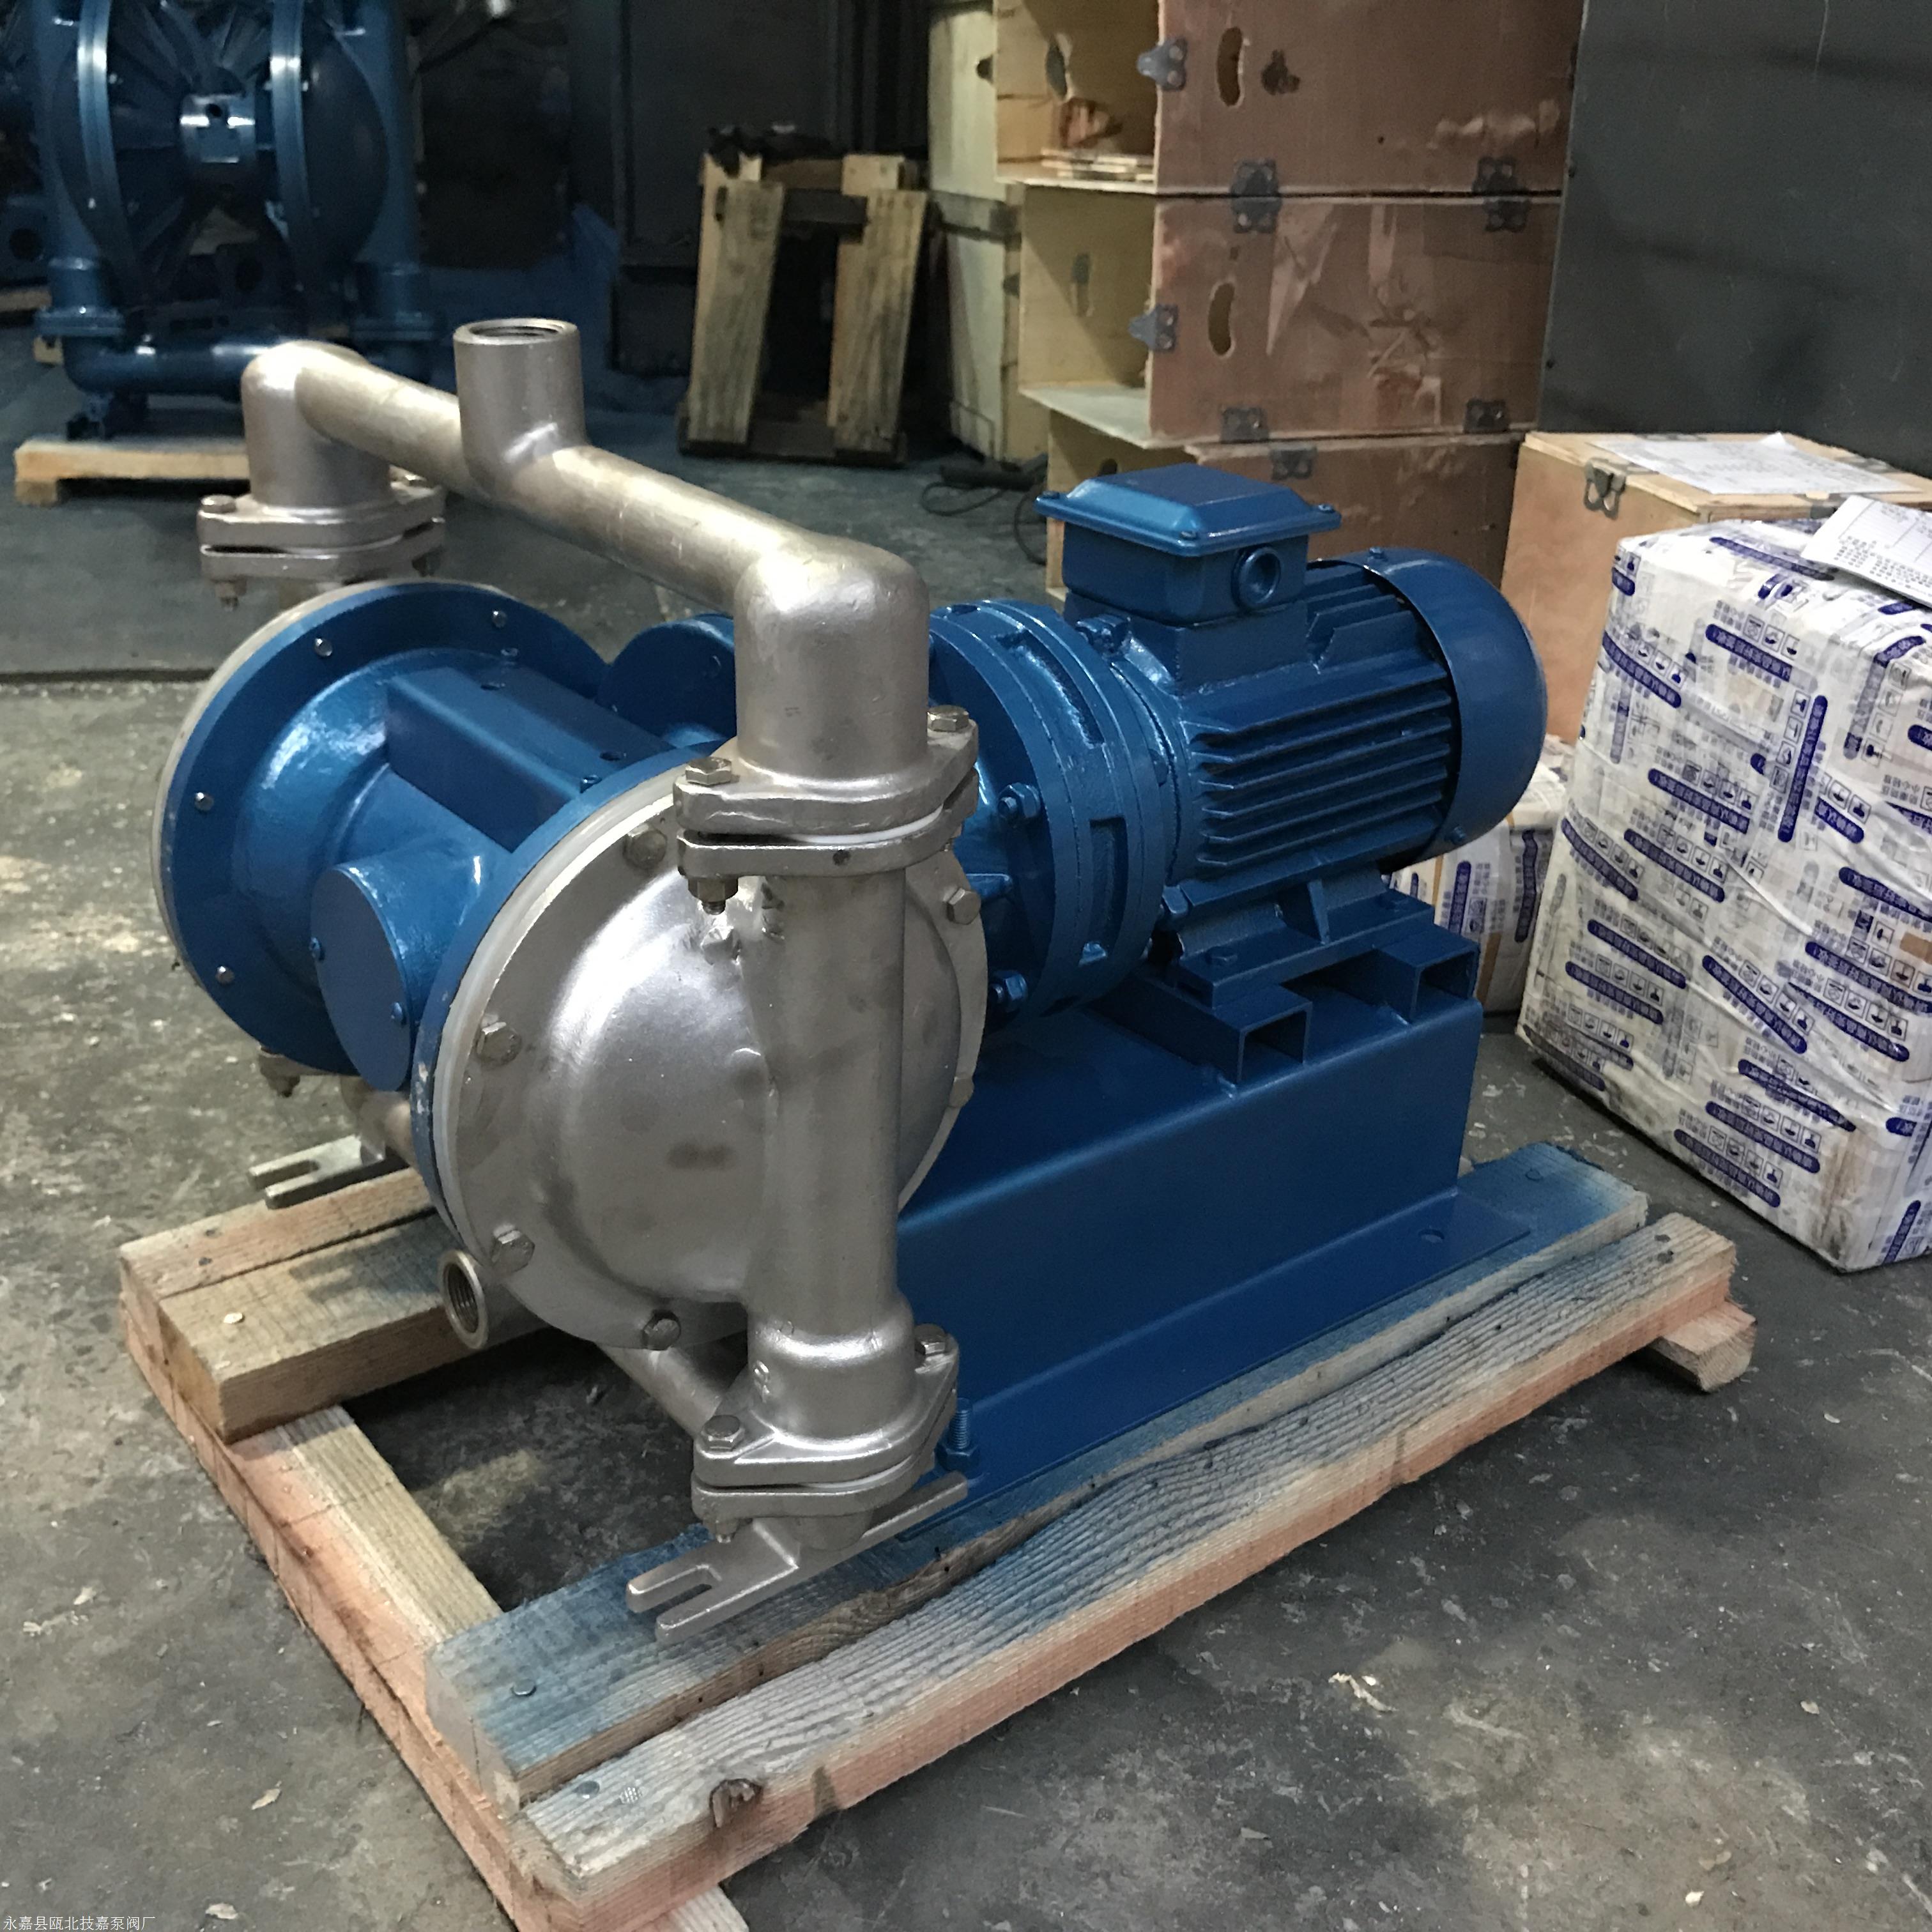 塑料电动隔膜泵 QBY-65隔膜泵 工程塑料电动隔膜泵 品能泵业